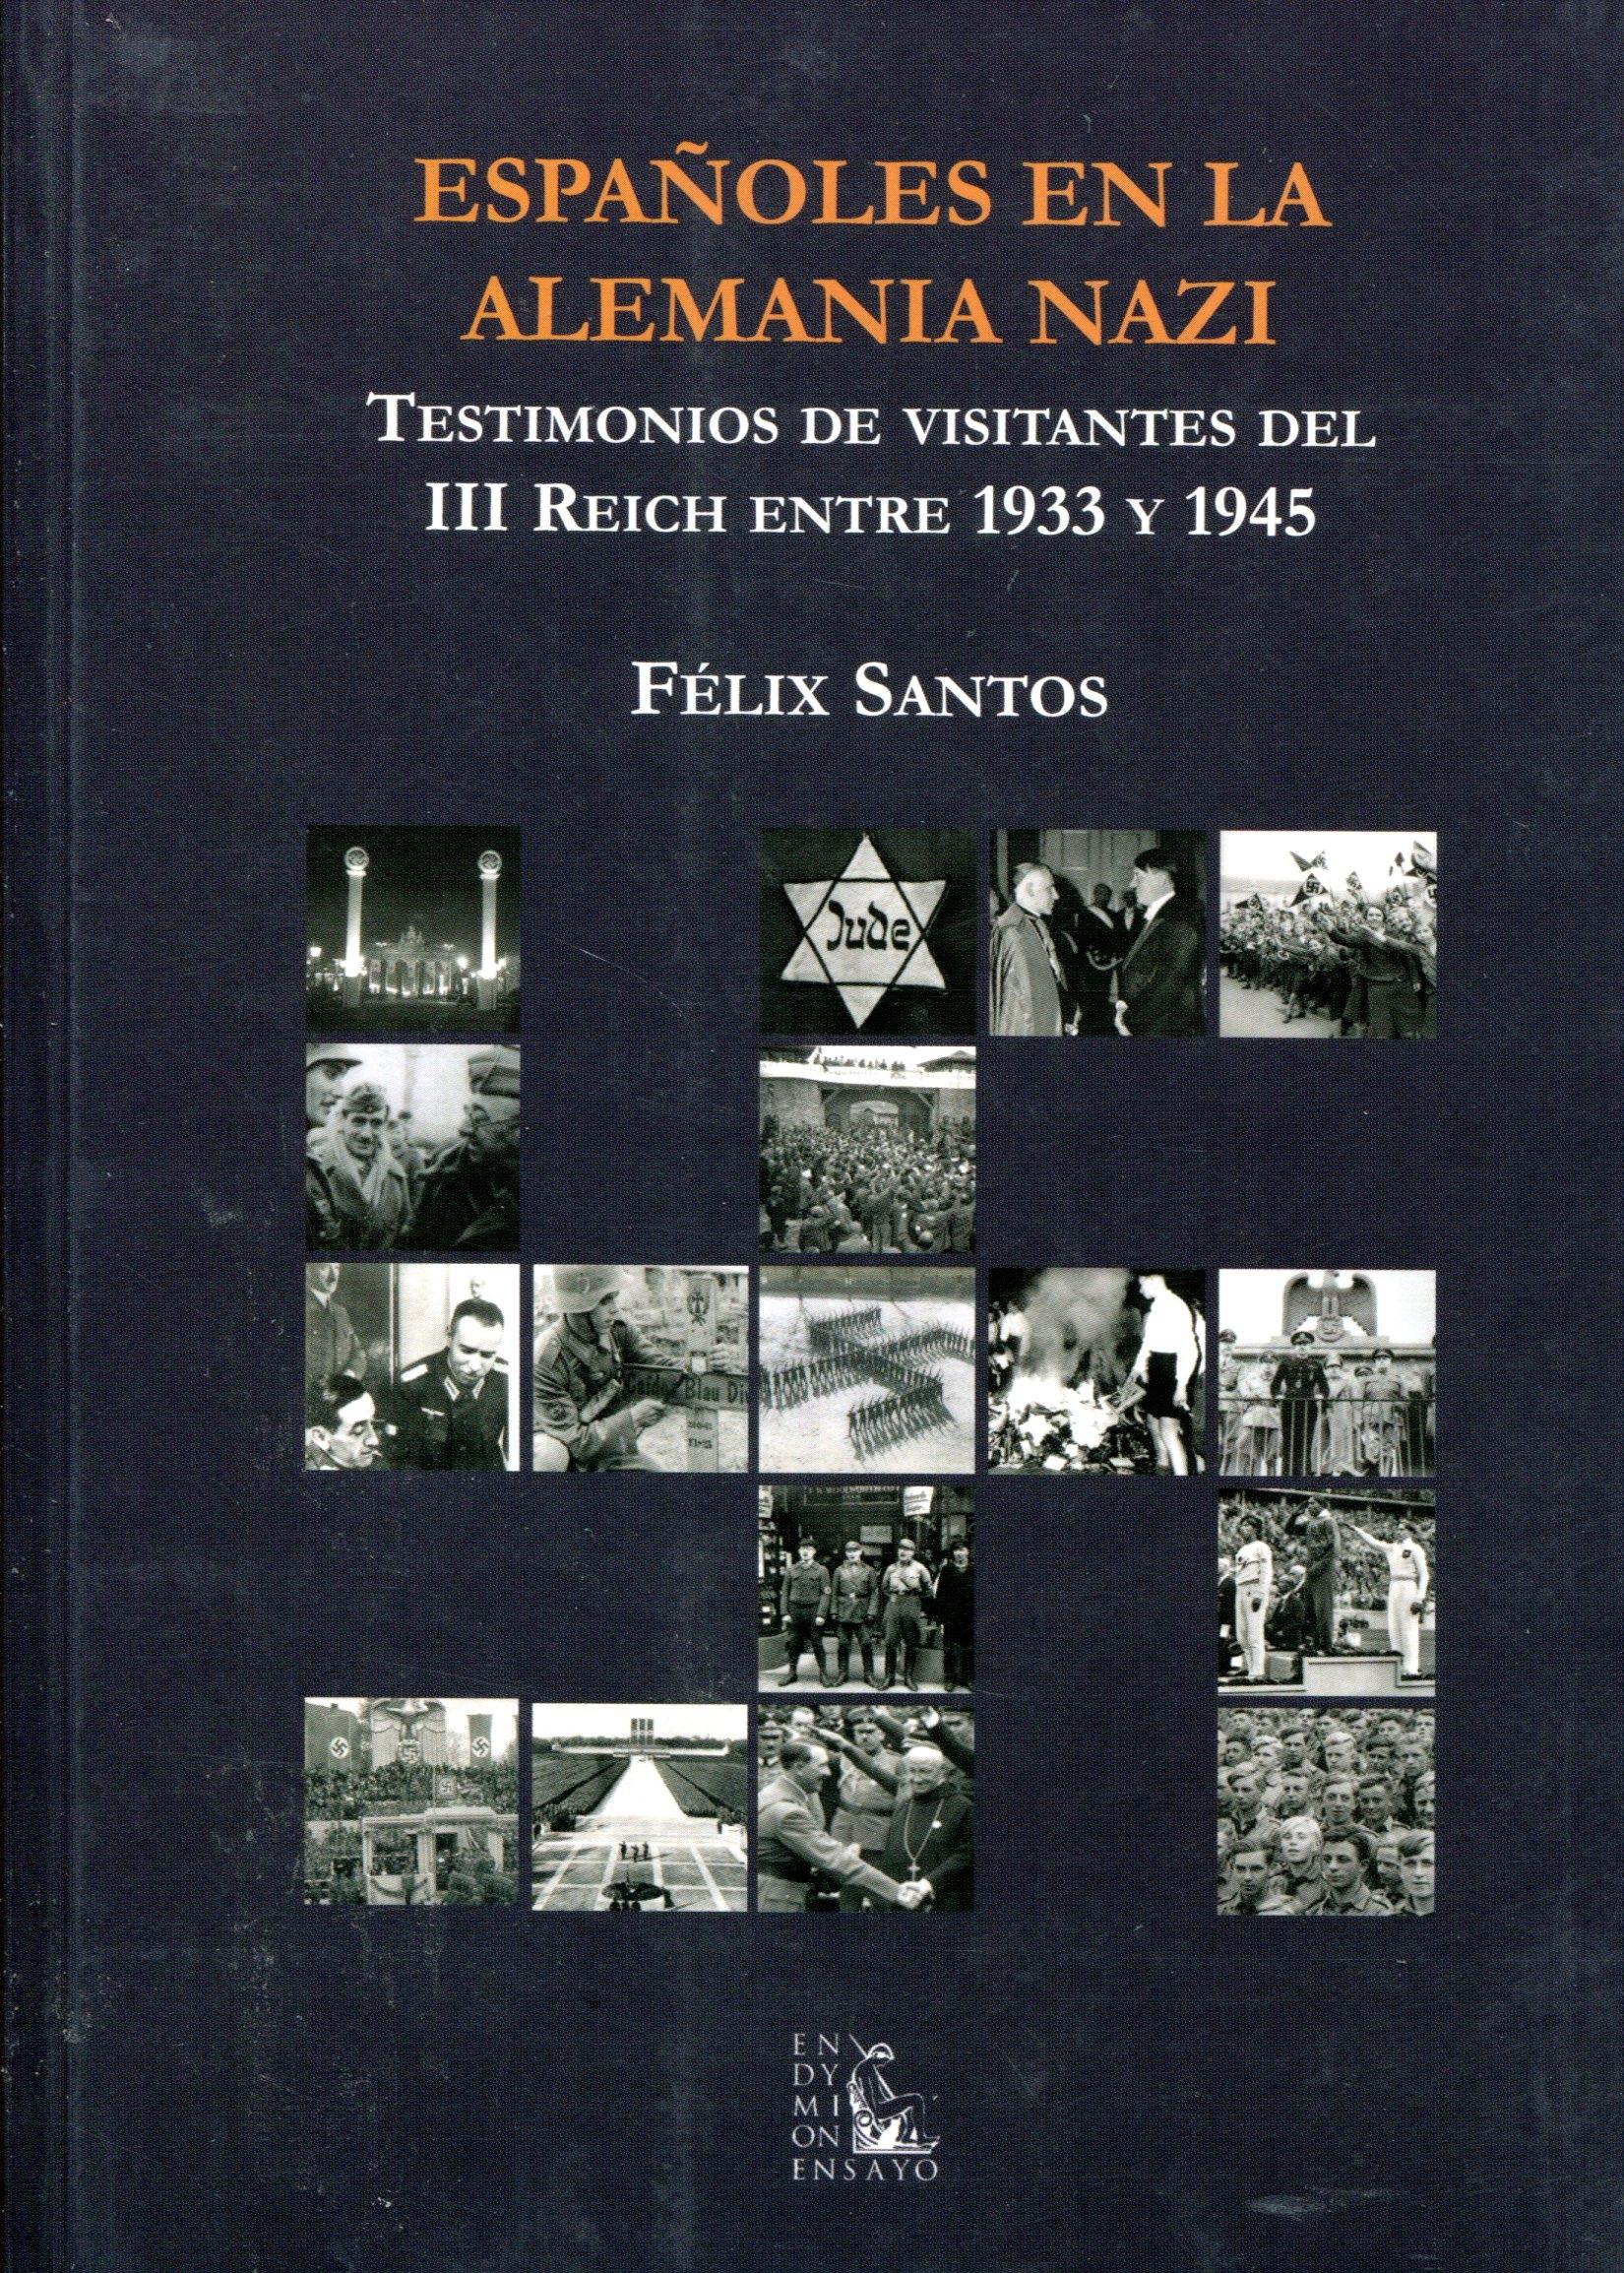 Españoles en la Alemania nazi "Testimonios de visitantes del III Reich entre 1933 y 1945"